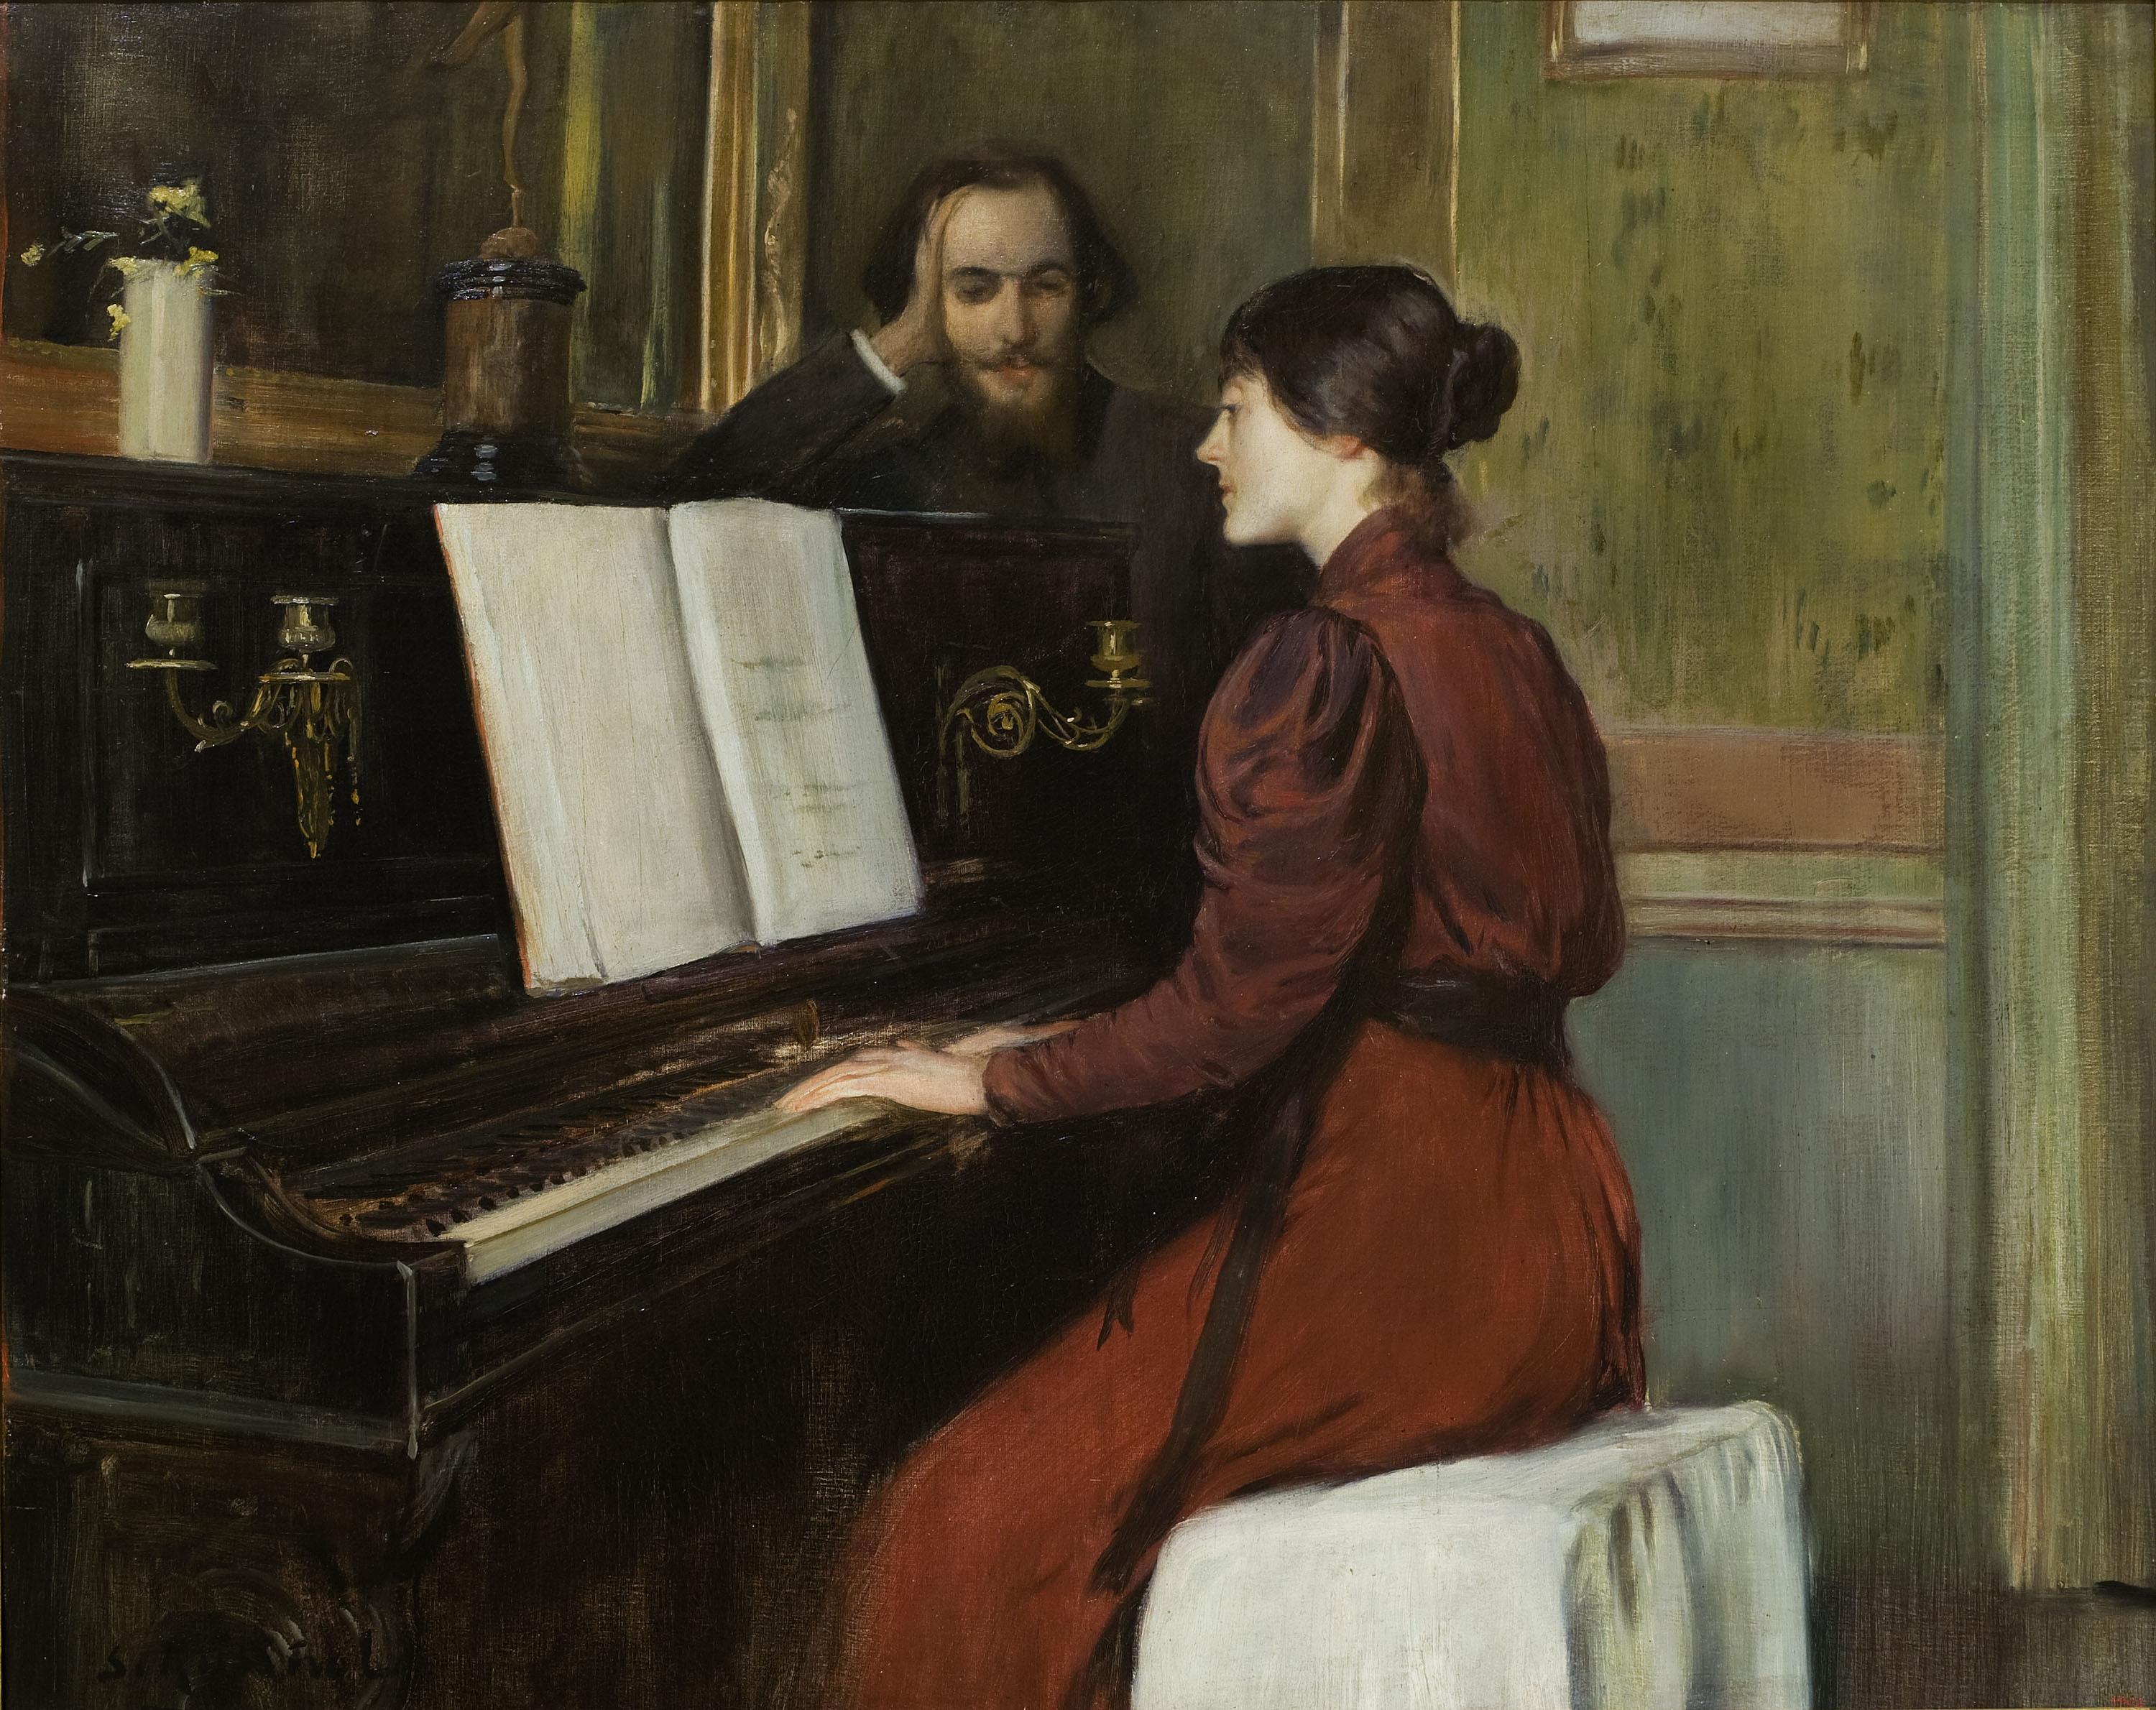 Santiago Rusiñol, A Romance, 1894